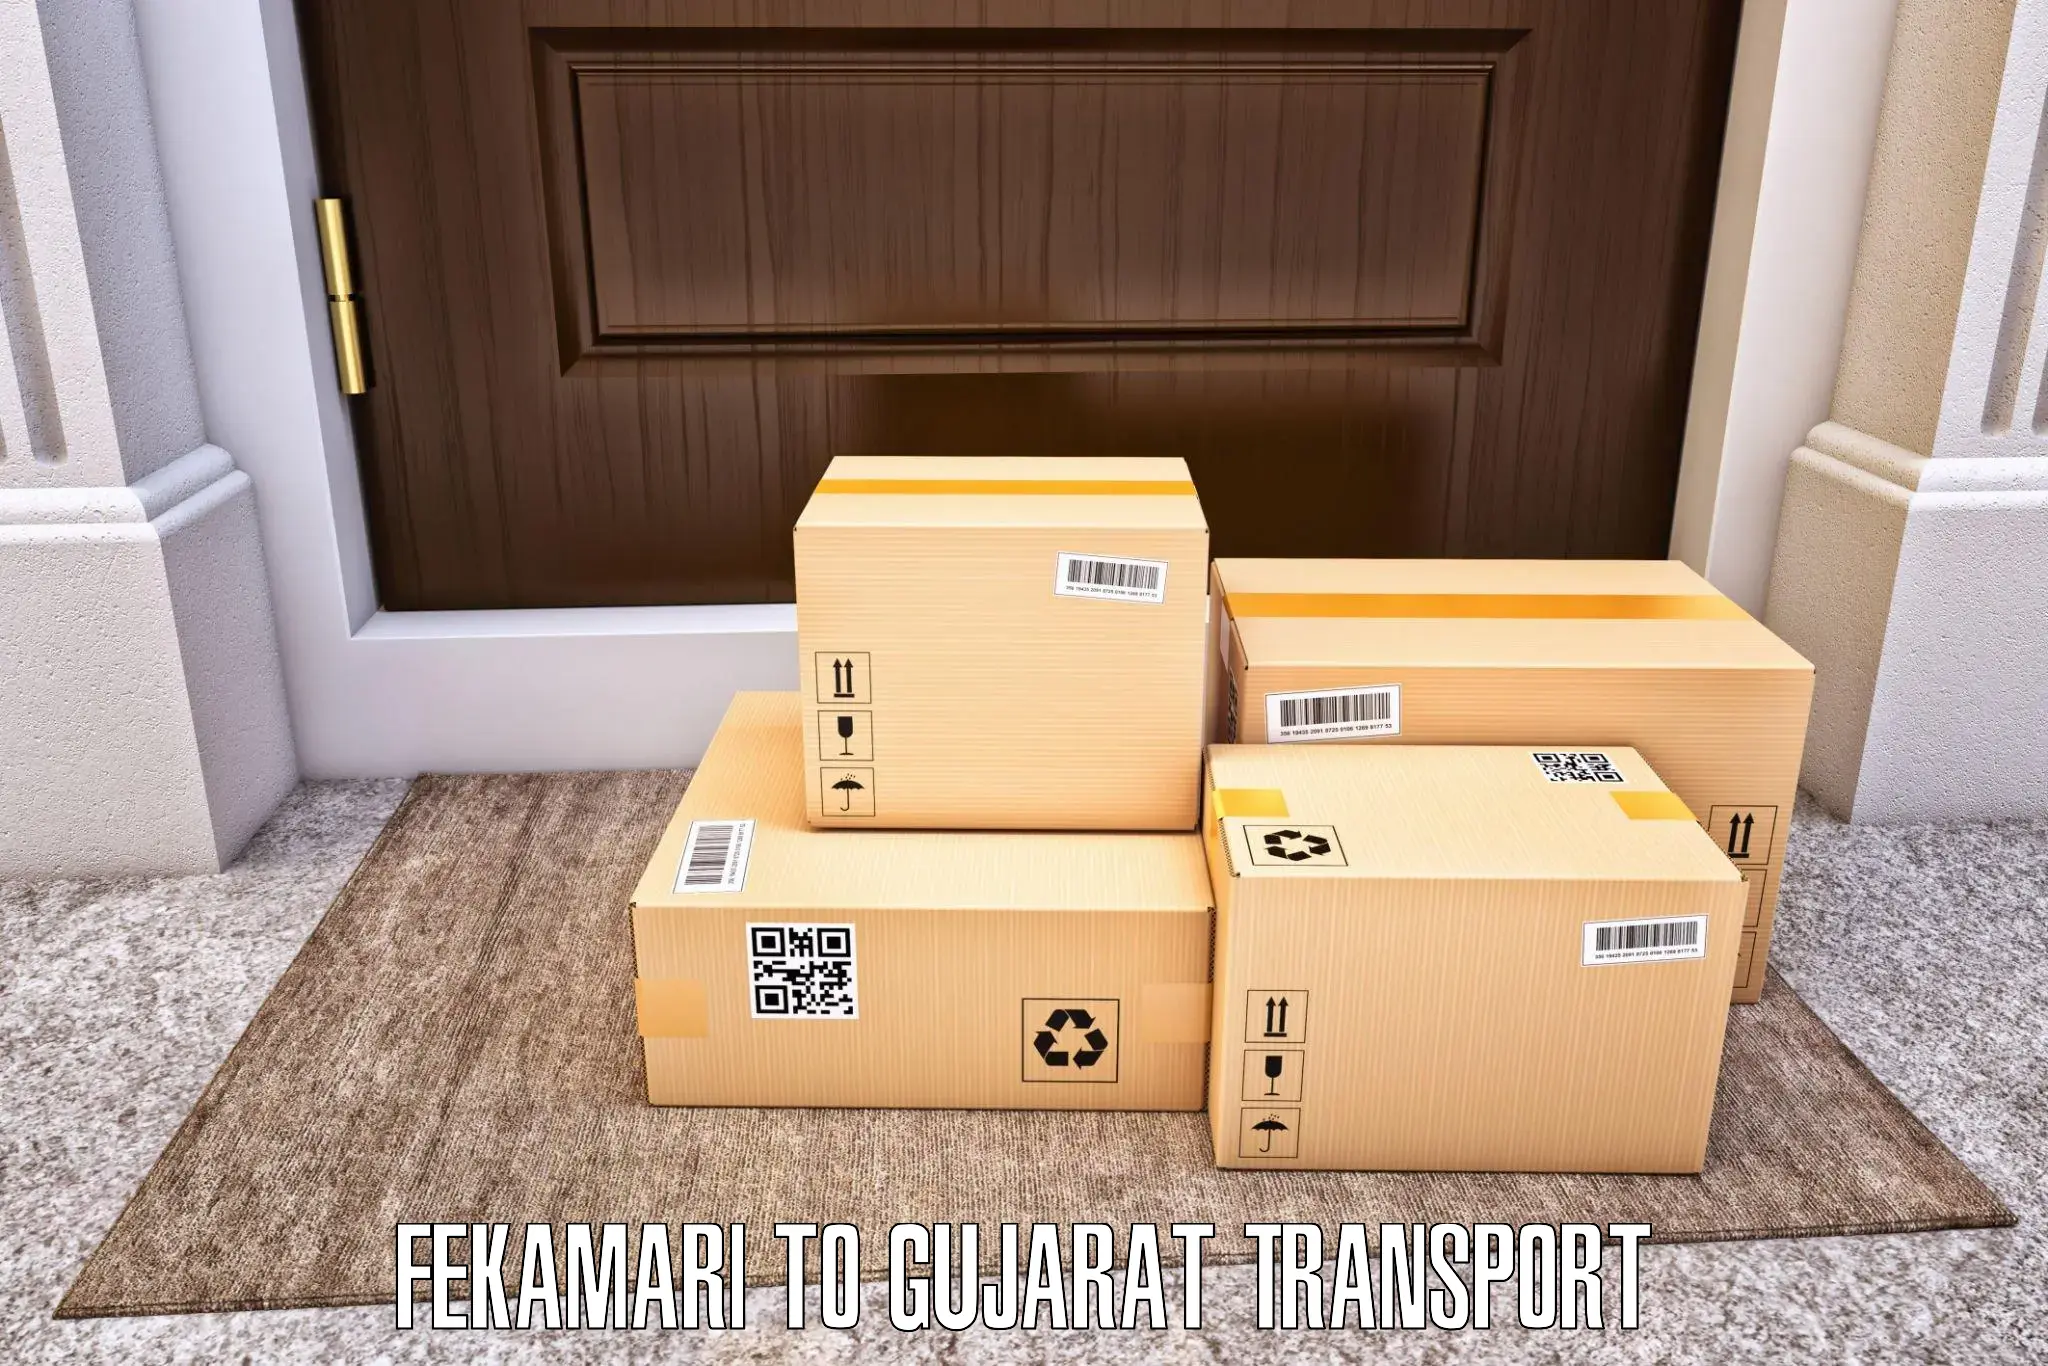 Vehicle parcel service Fekamari to Dayapar